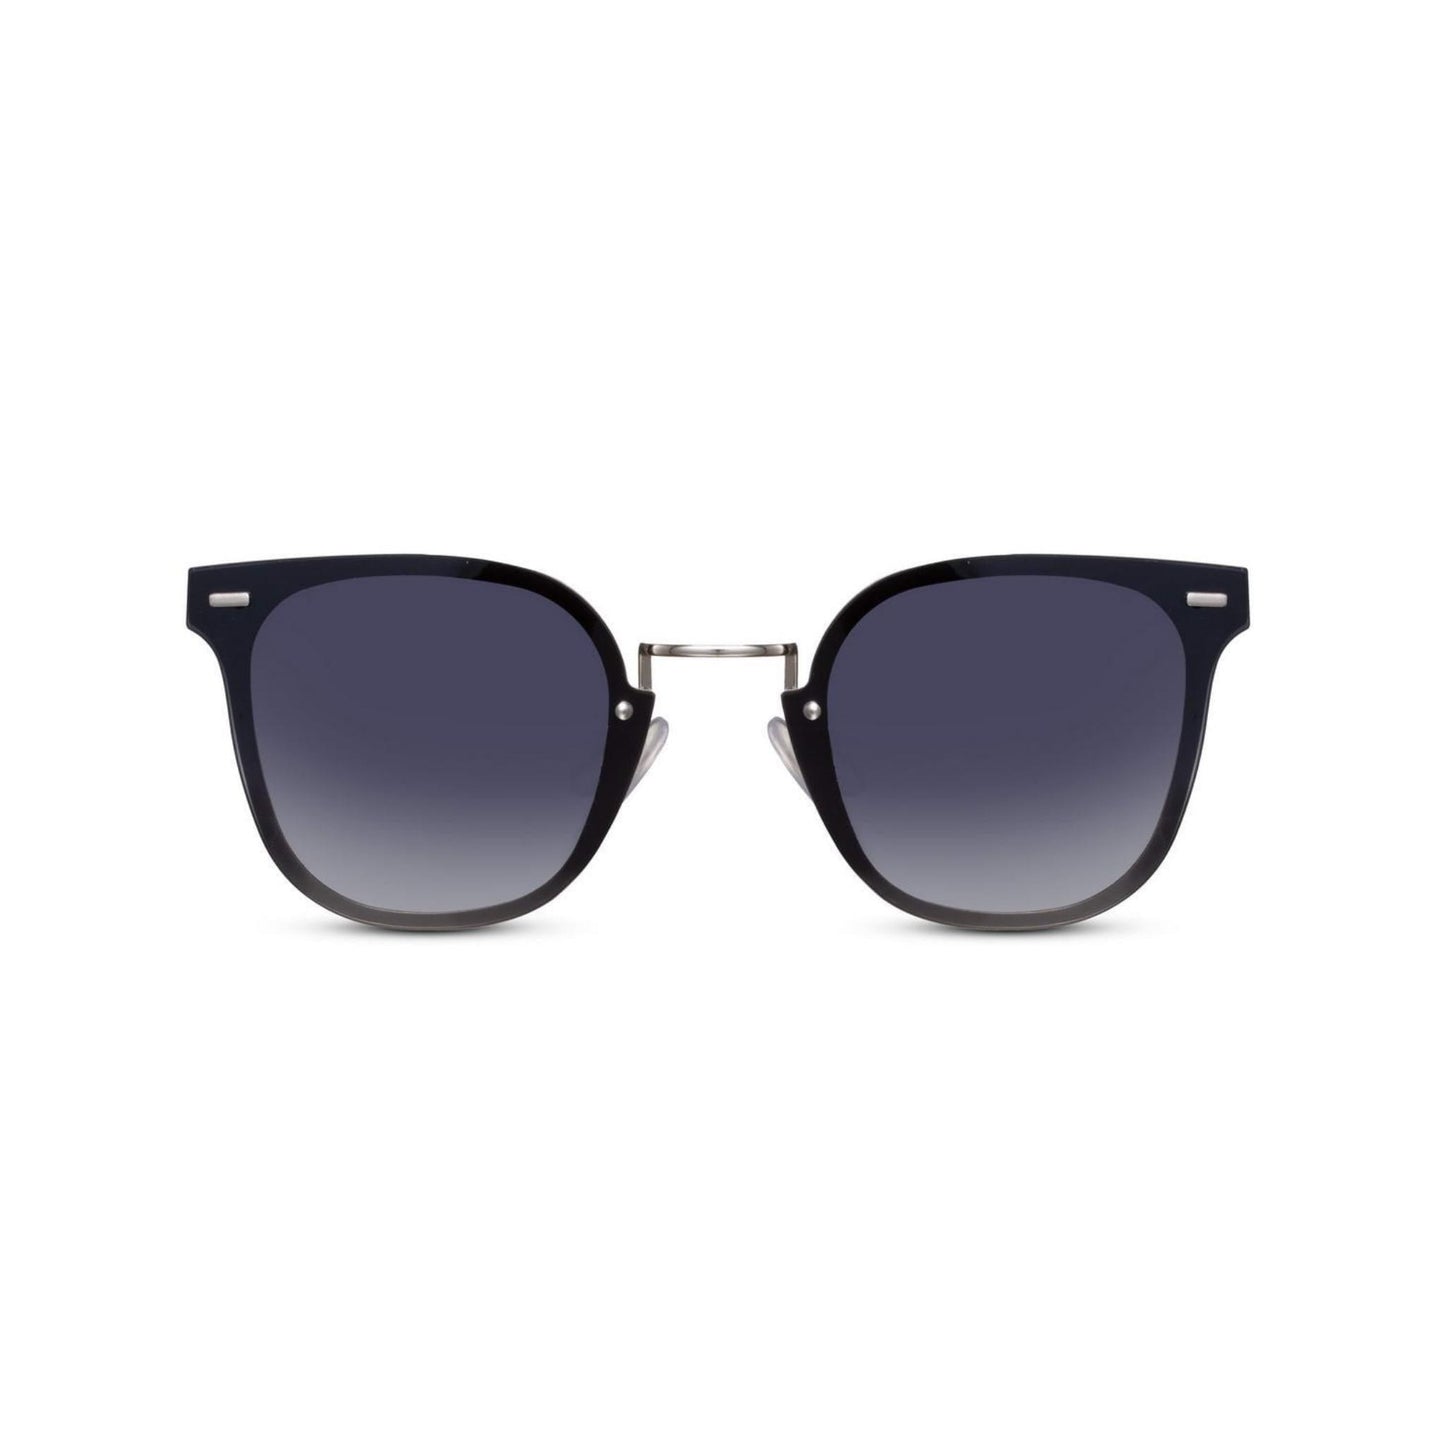 Ορθογώνια Γυαλιά ηλίου Kaly της Exposure Sunglasses με προστασία UV400 σε ασημί χρώμα σκελετού και μαύρο φακό.